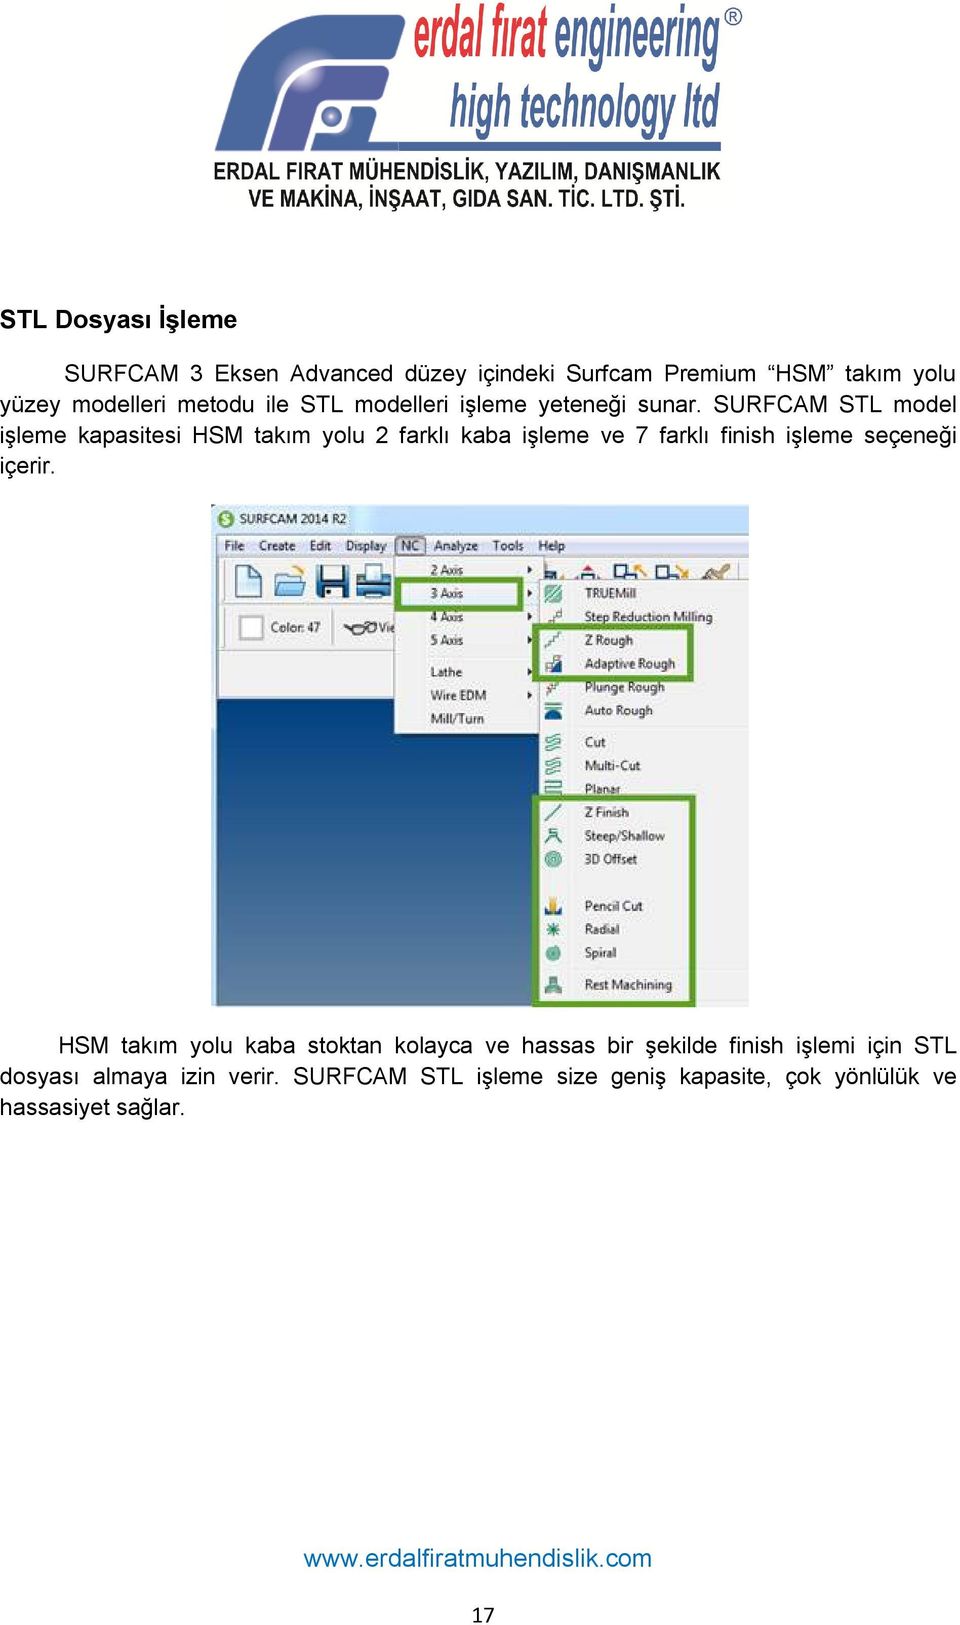 SURFCAM STL model işleme kapasitesi HSM takım yolu 2 farklı kaba işleme ve 7 farklı finish işleme seçeneği içerir.